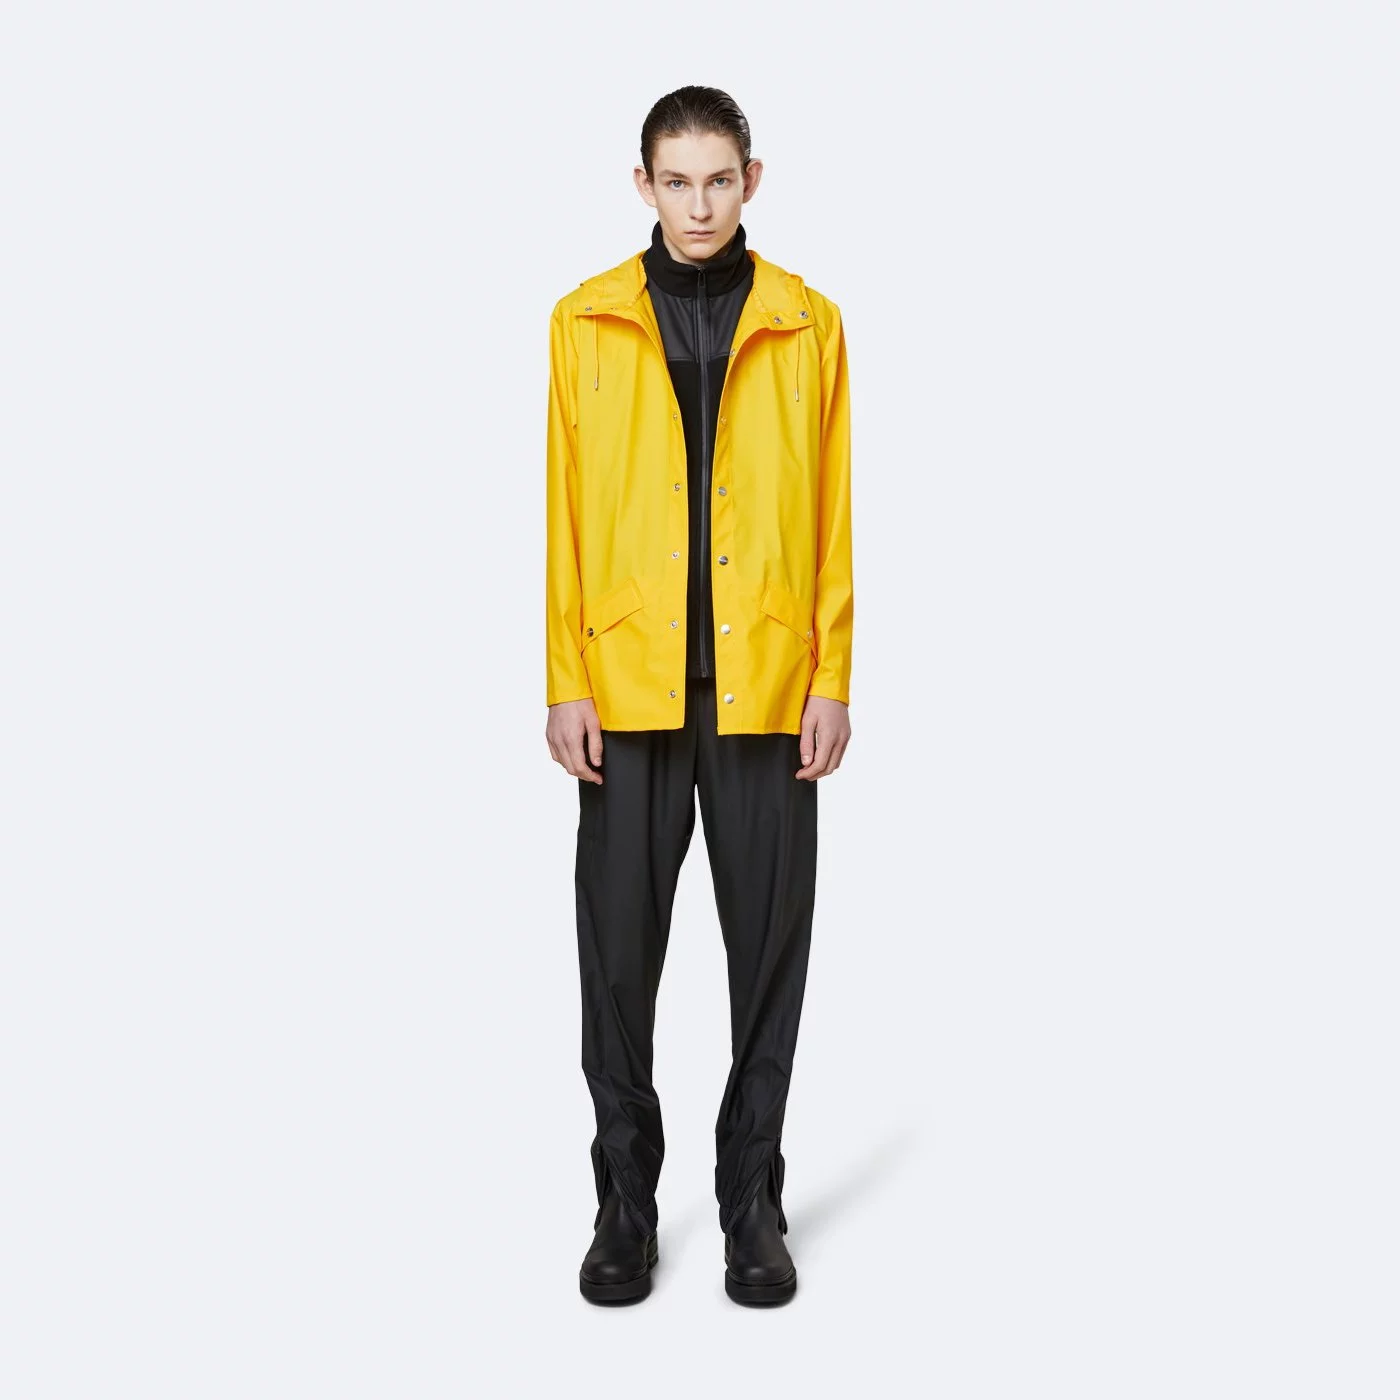 Imperméable Rains Jacket Yellow 1201-1 (XS/S) (Yellow)